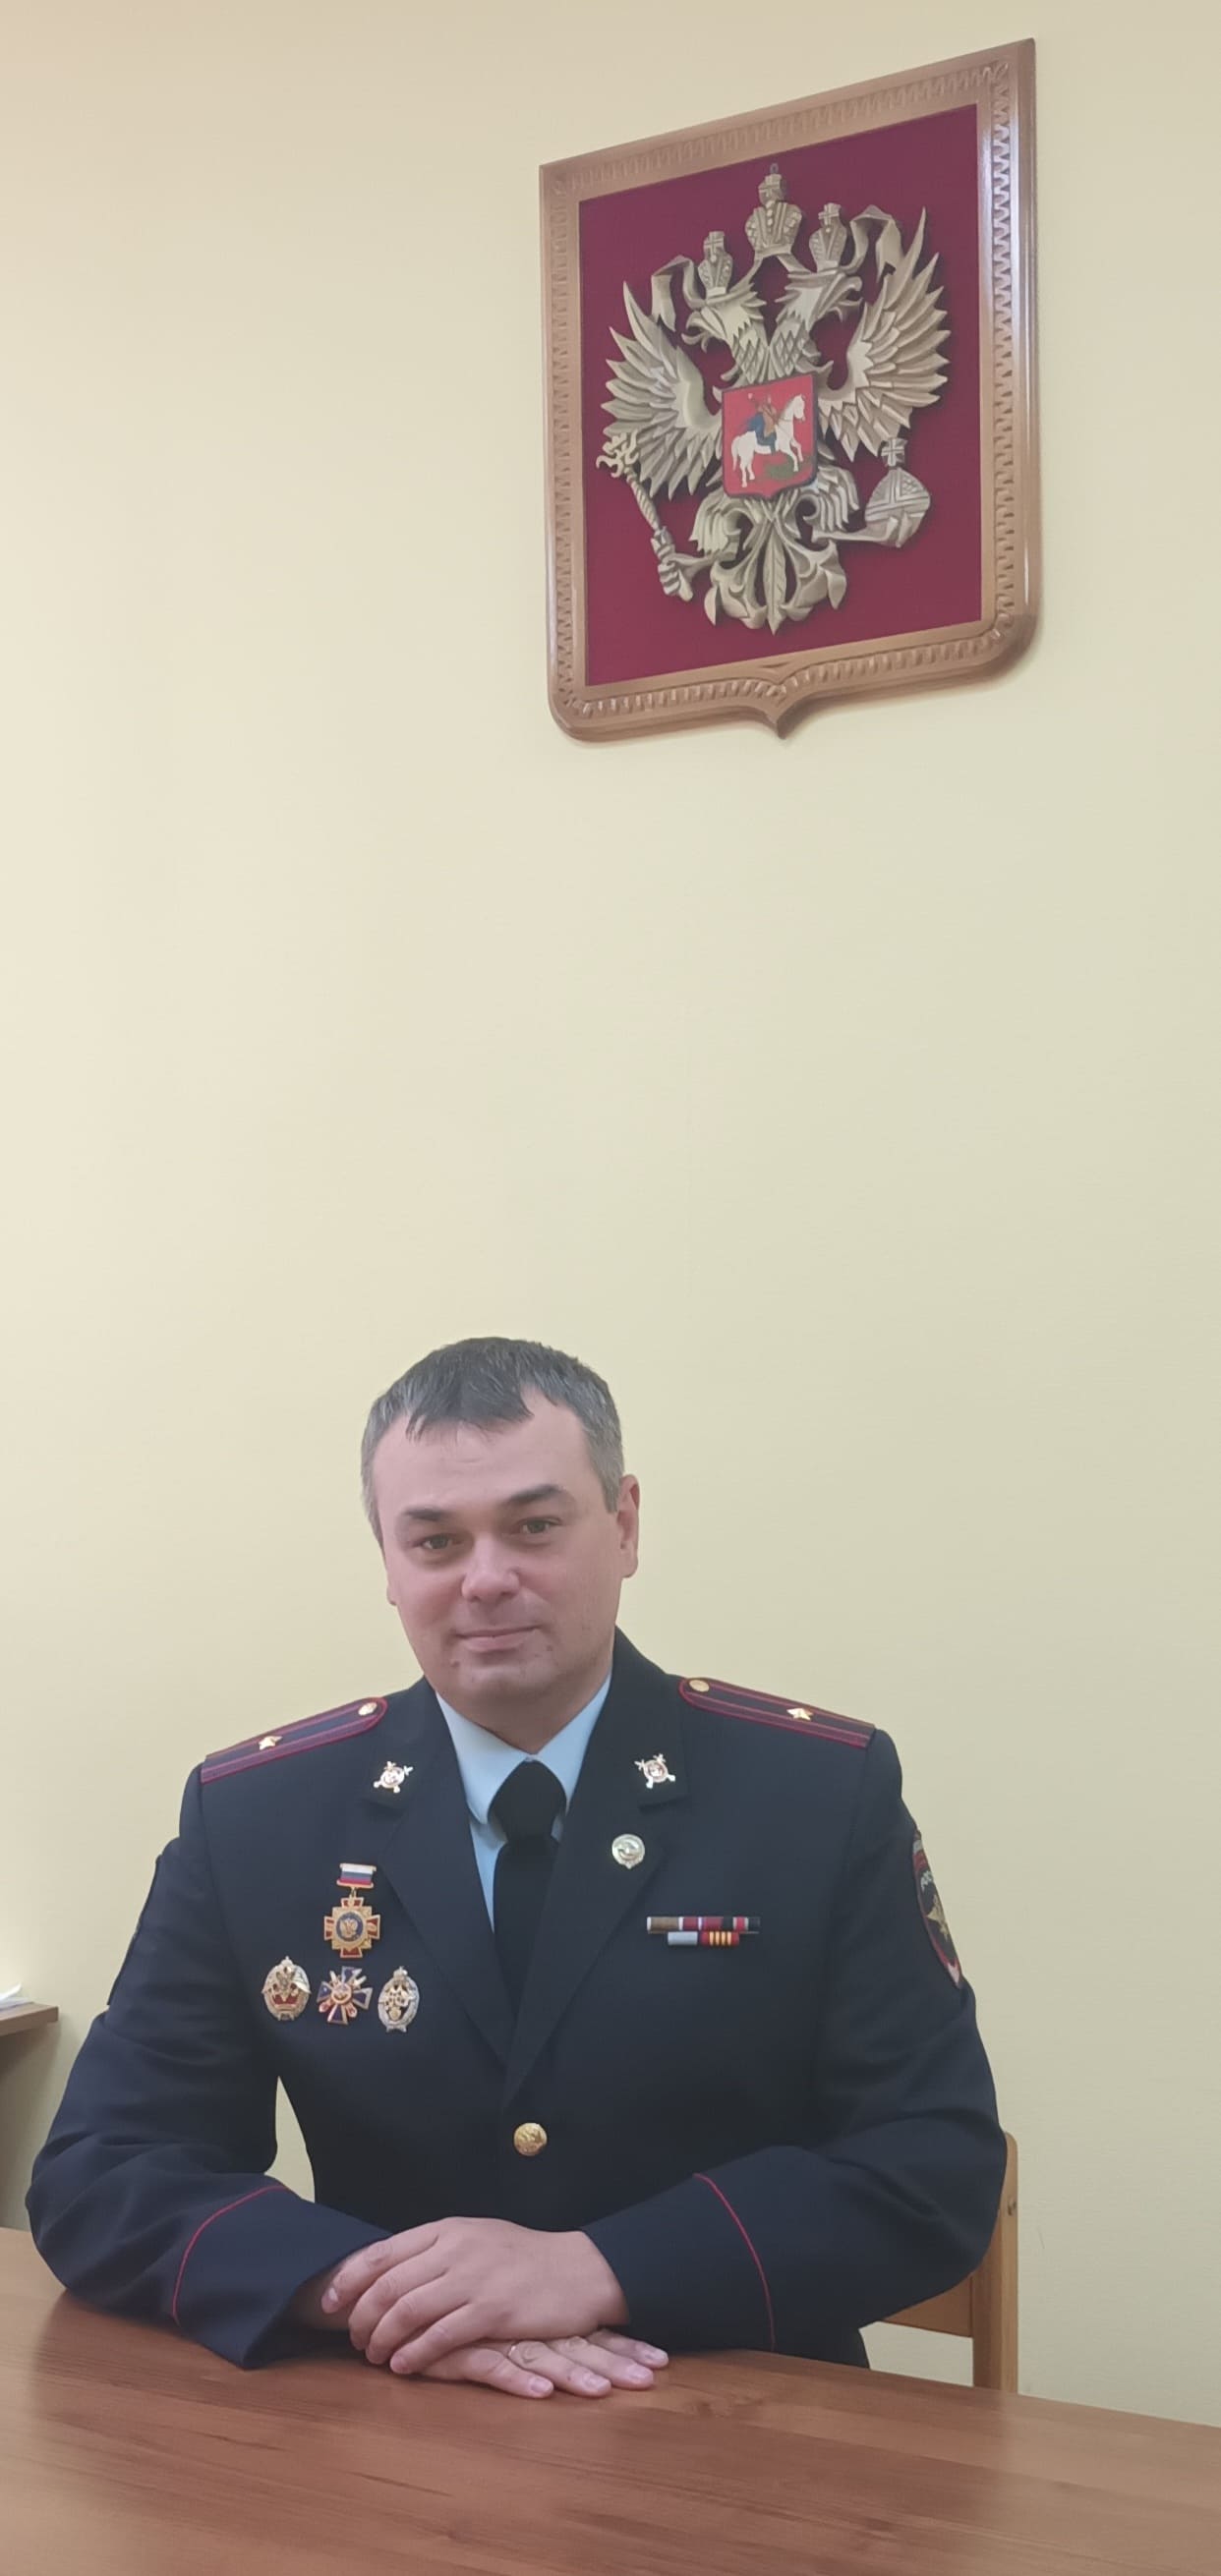 Начальник ОГИБДД
ОМВД России по Костомукше,
майор полиции А.А. Никитин